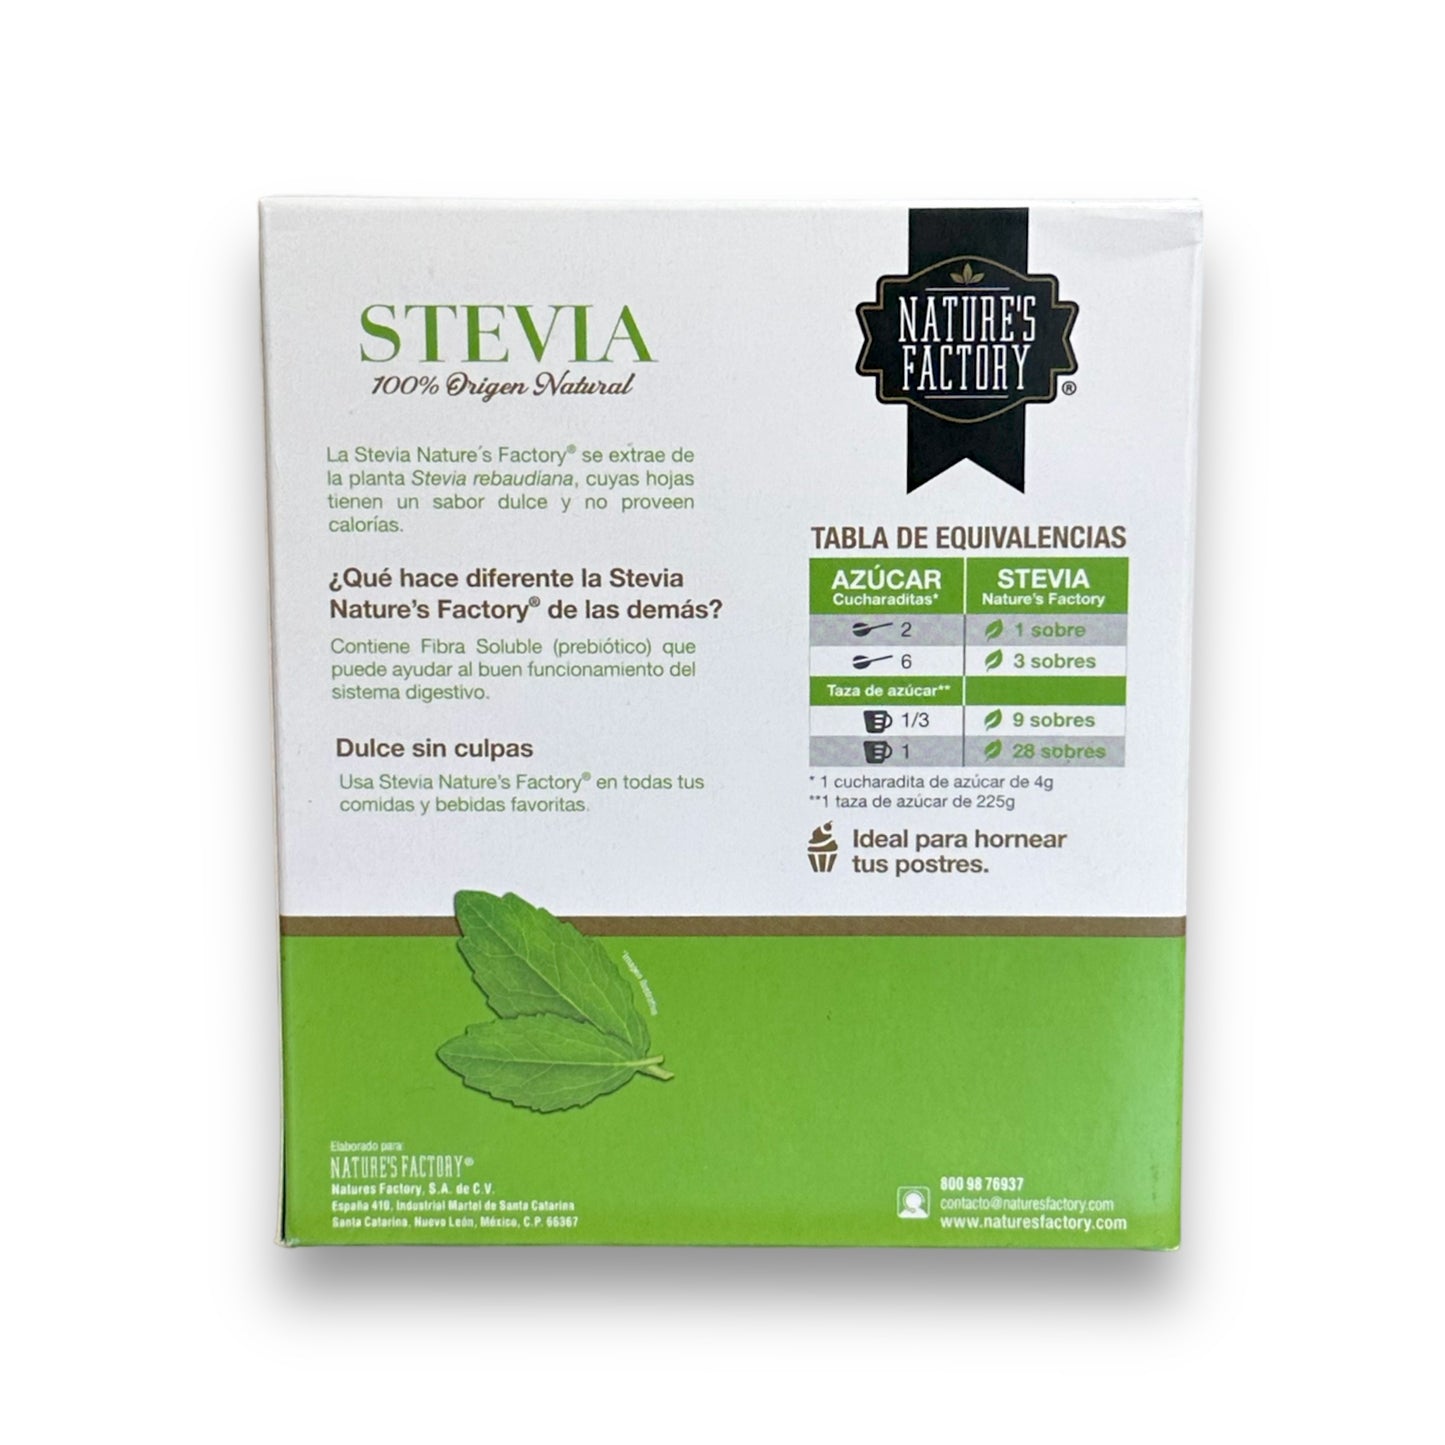 Stevia en Polvo (40 Sobres)